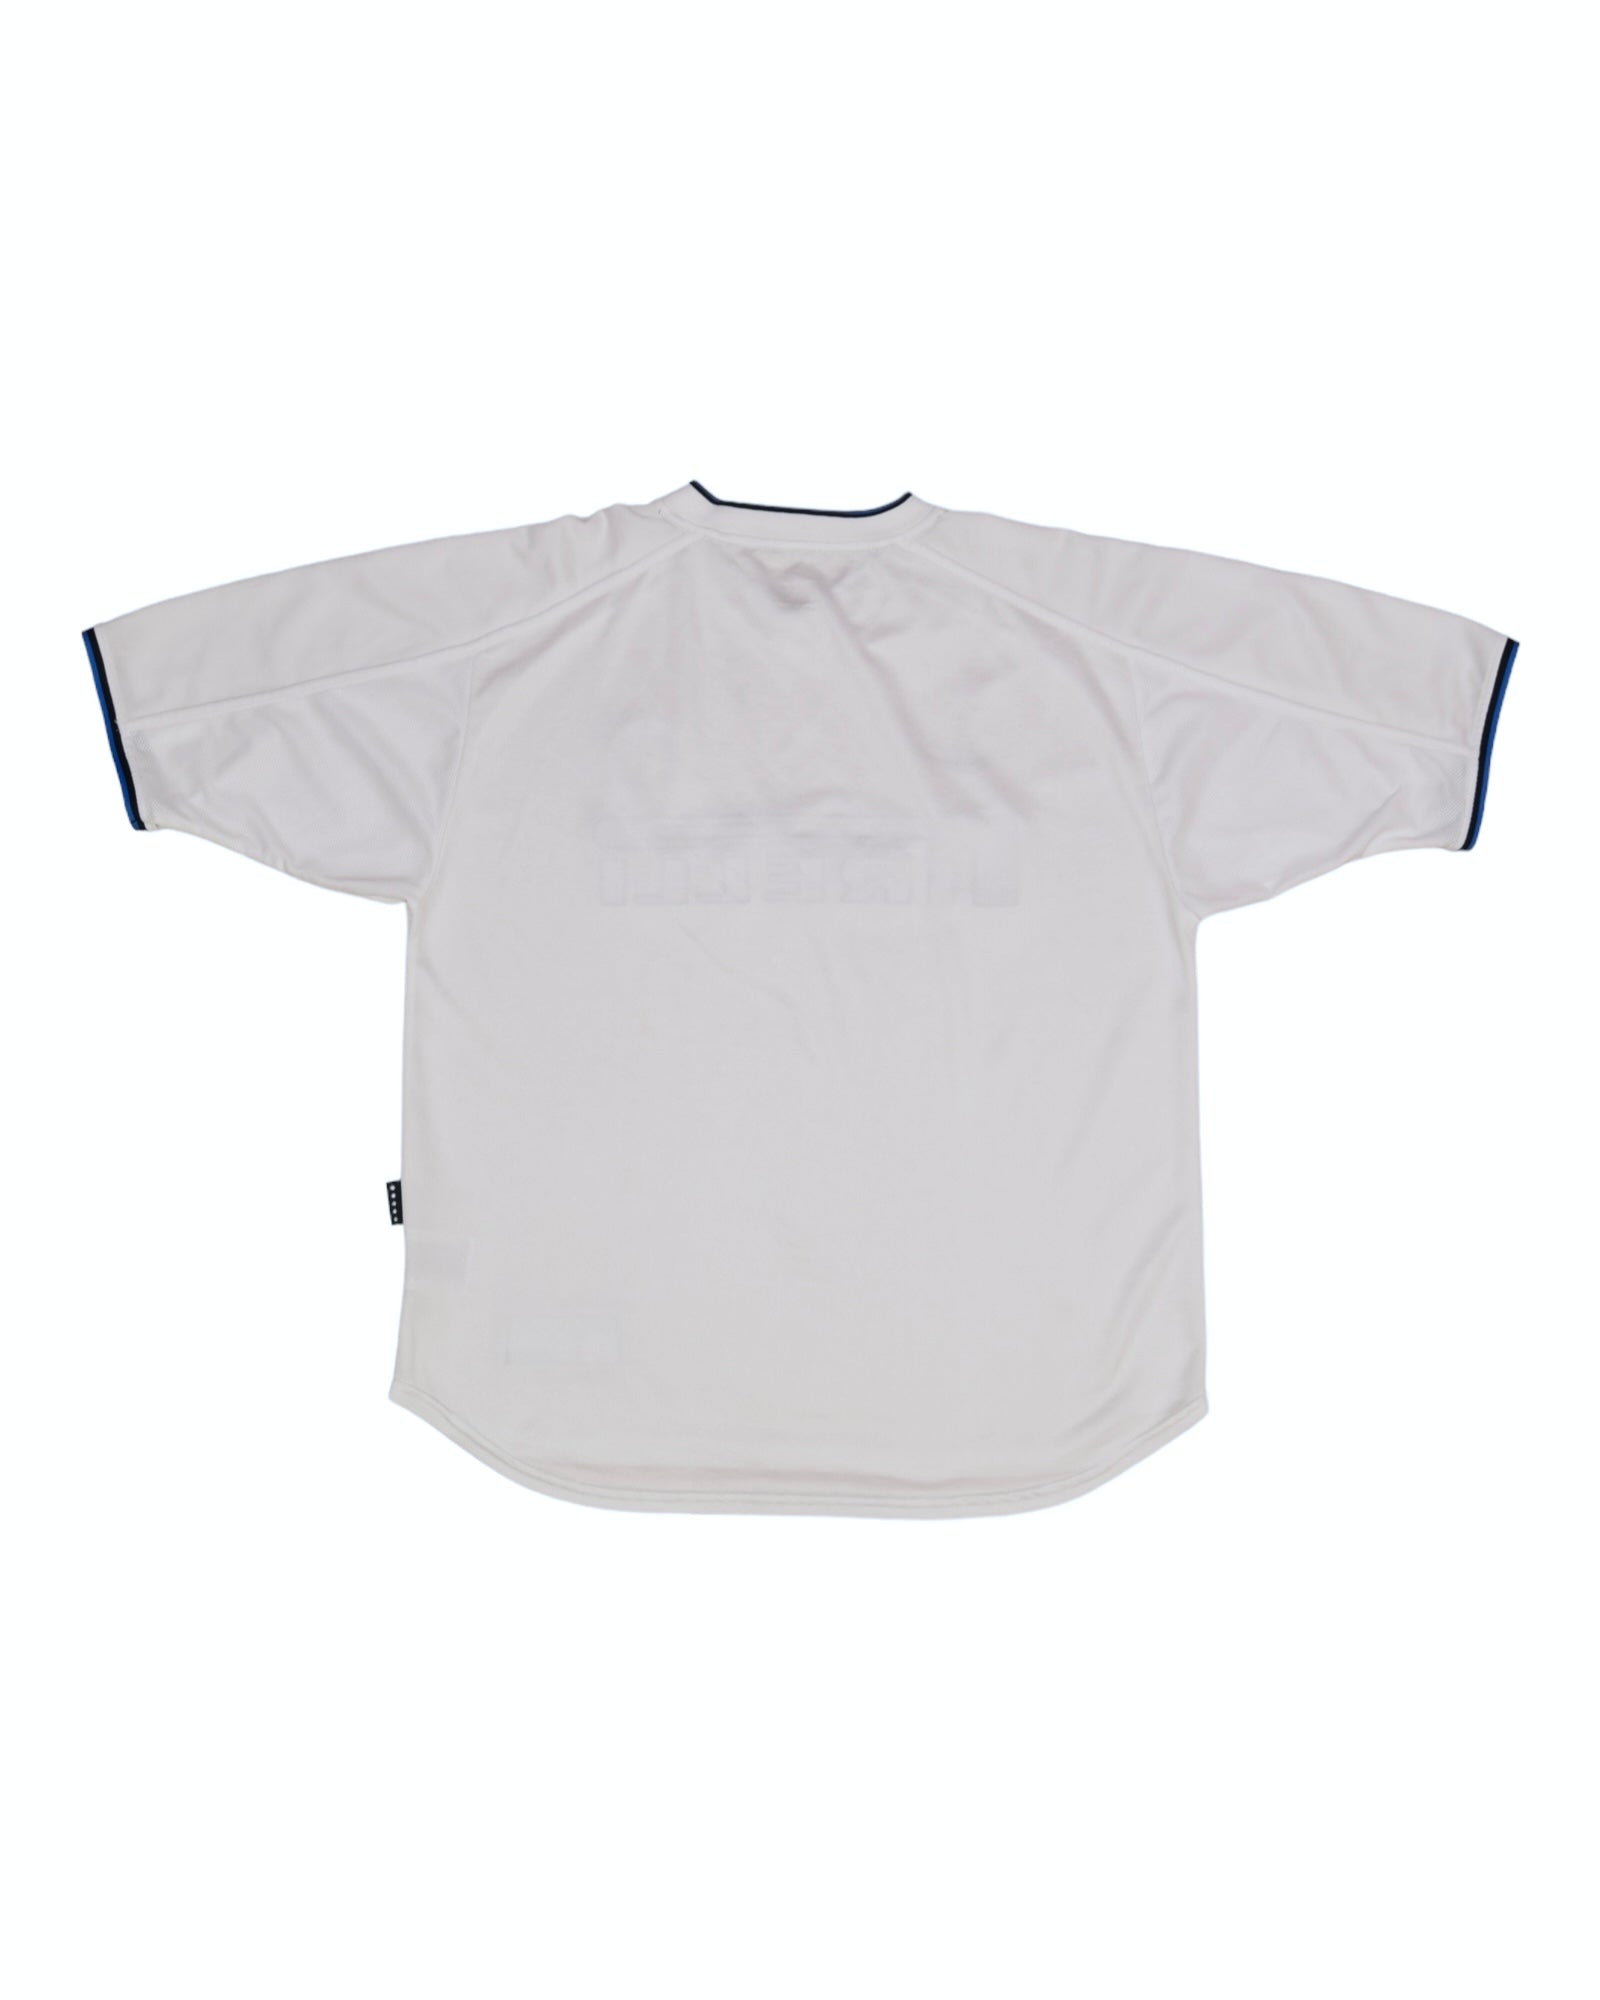 Inter Internazionale Milano Milan Nike 1999 - 2000 Away Football Shirt White Pirelli Size M Made in UK